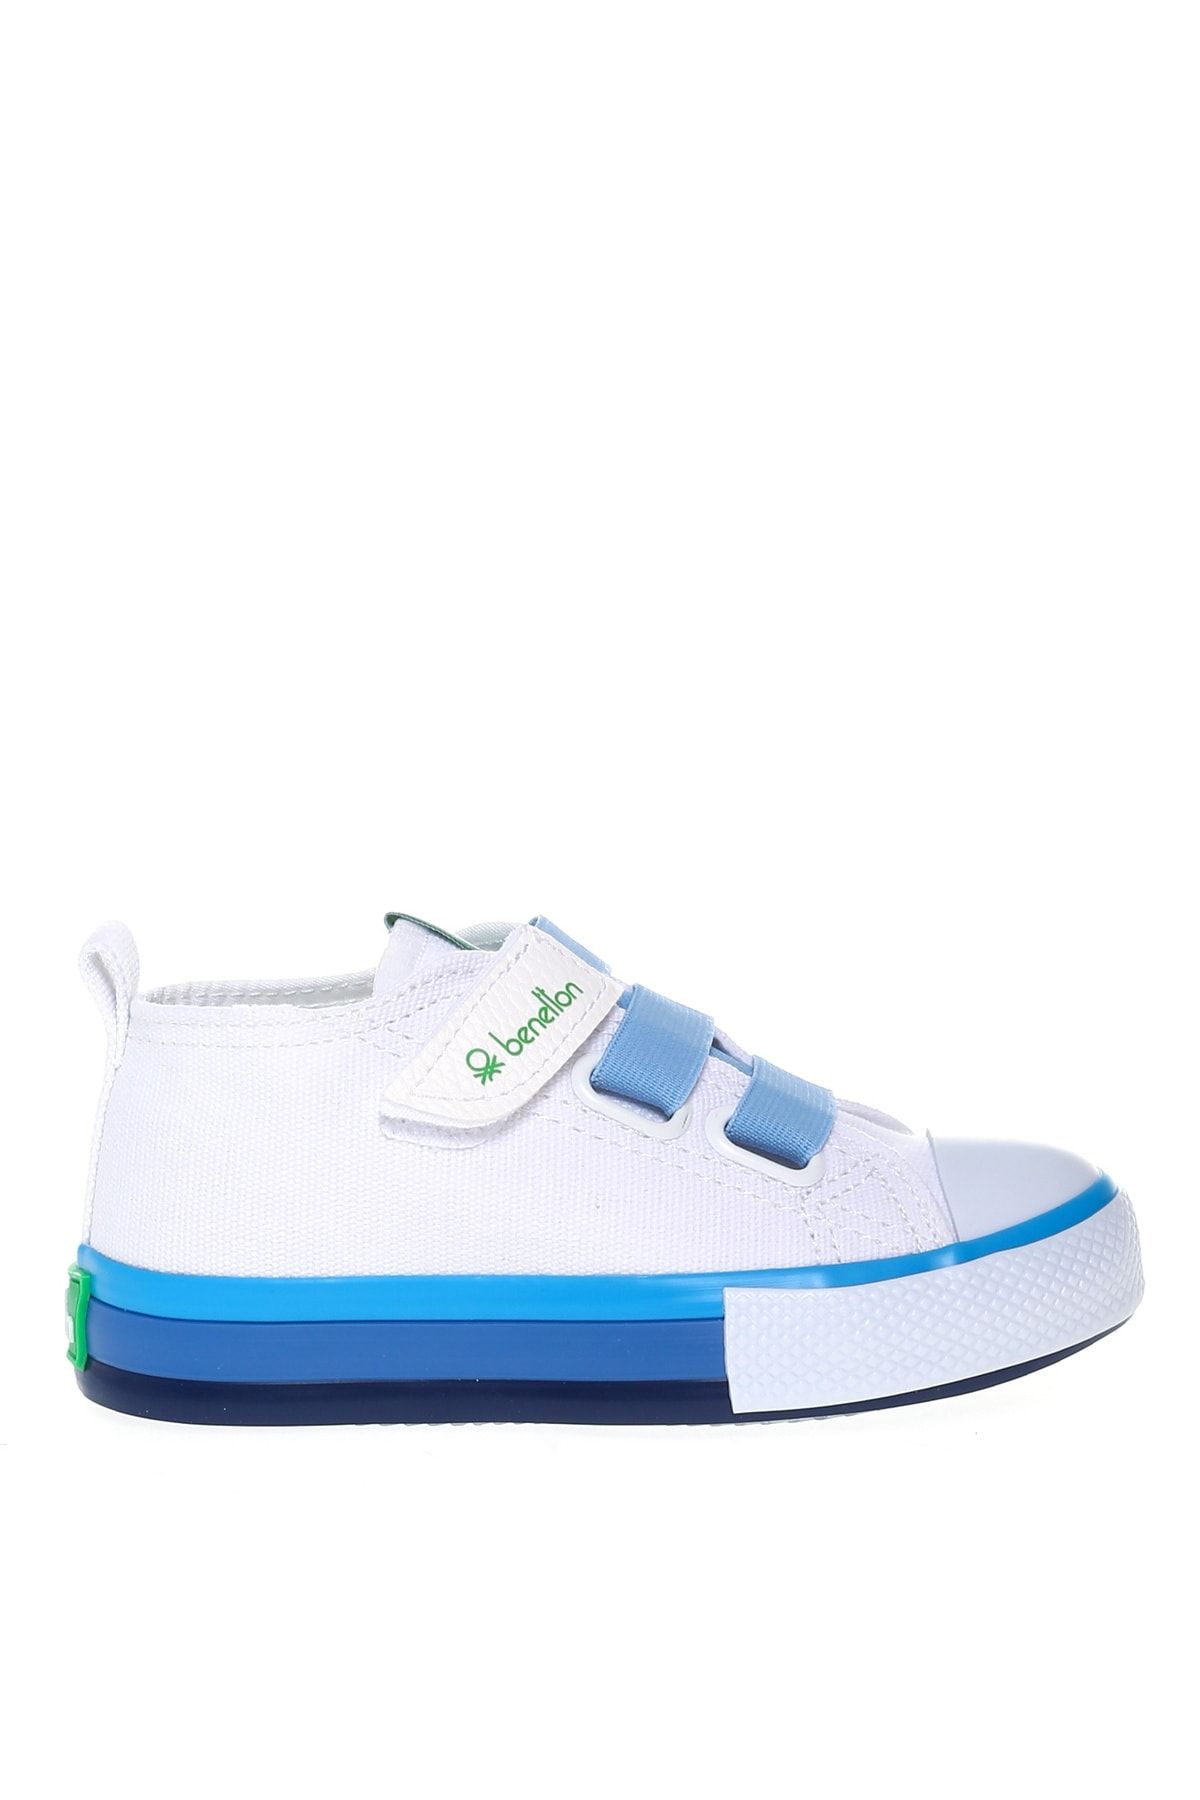 Benetton Beyaz - Mavi Erkek Çocuk Yürüyüş Ayakkabısı BN-30649 688-Beyaz-Mavi